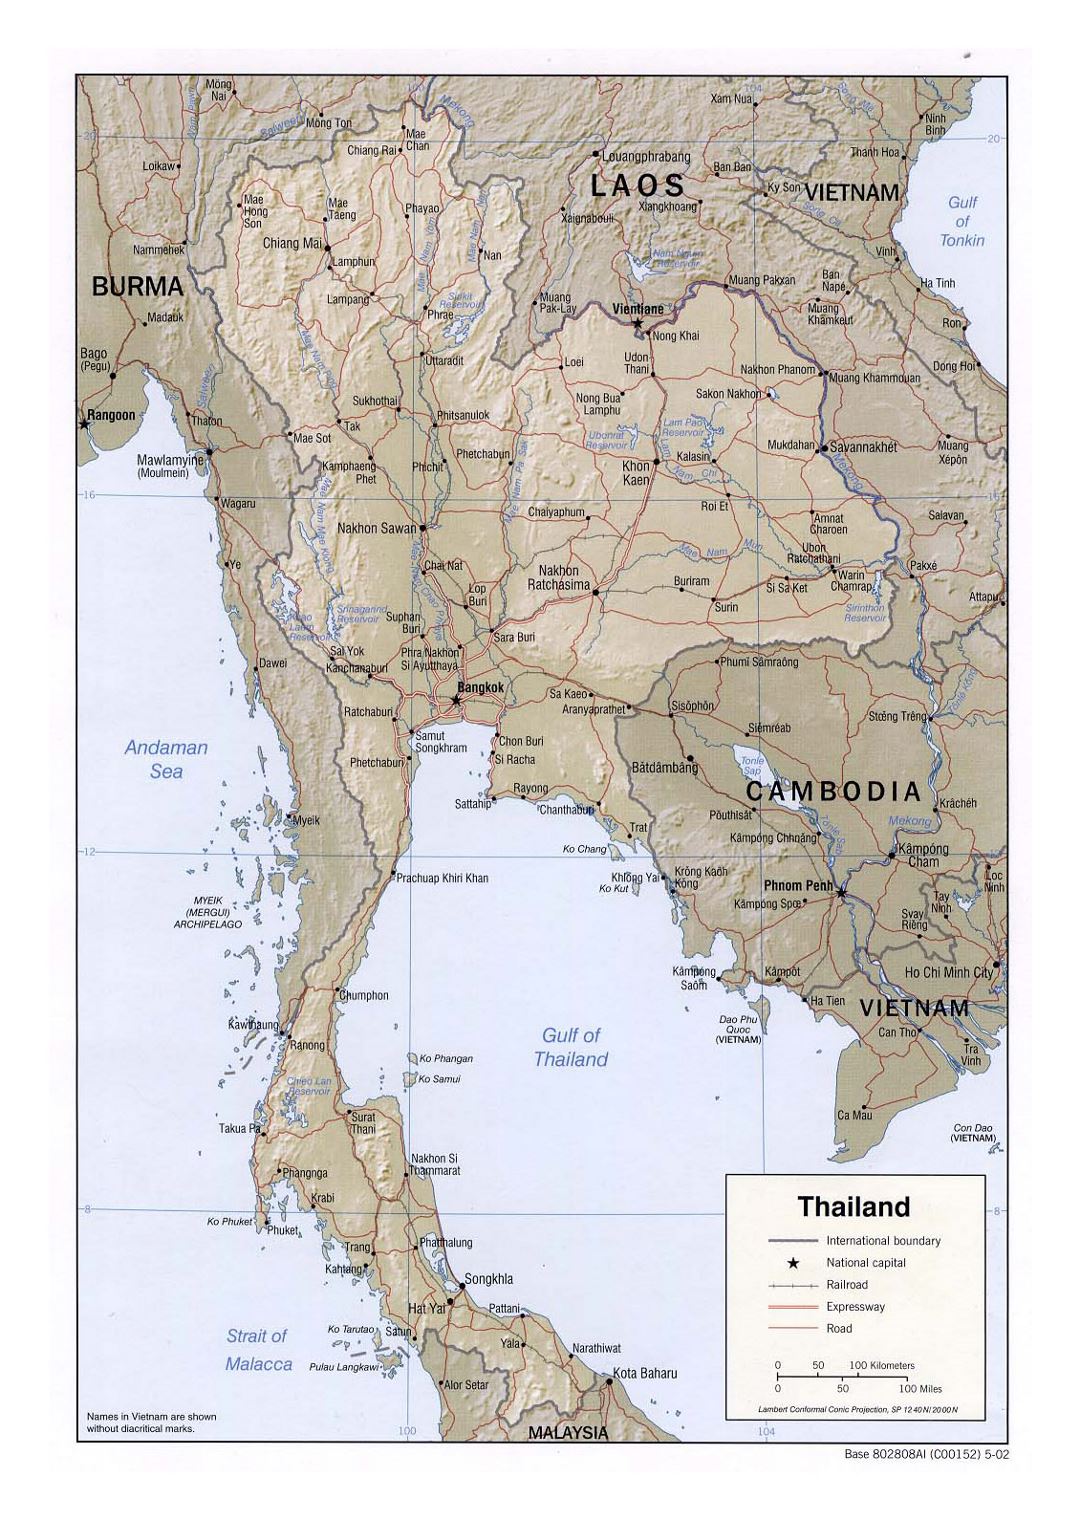 Детальная политическая карта Таиланда с рельефом, дорогами, железными дорогами и крупными городами - 2002